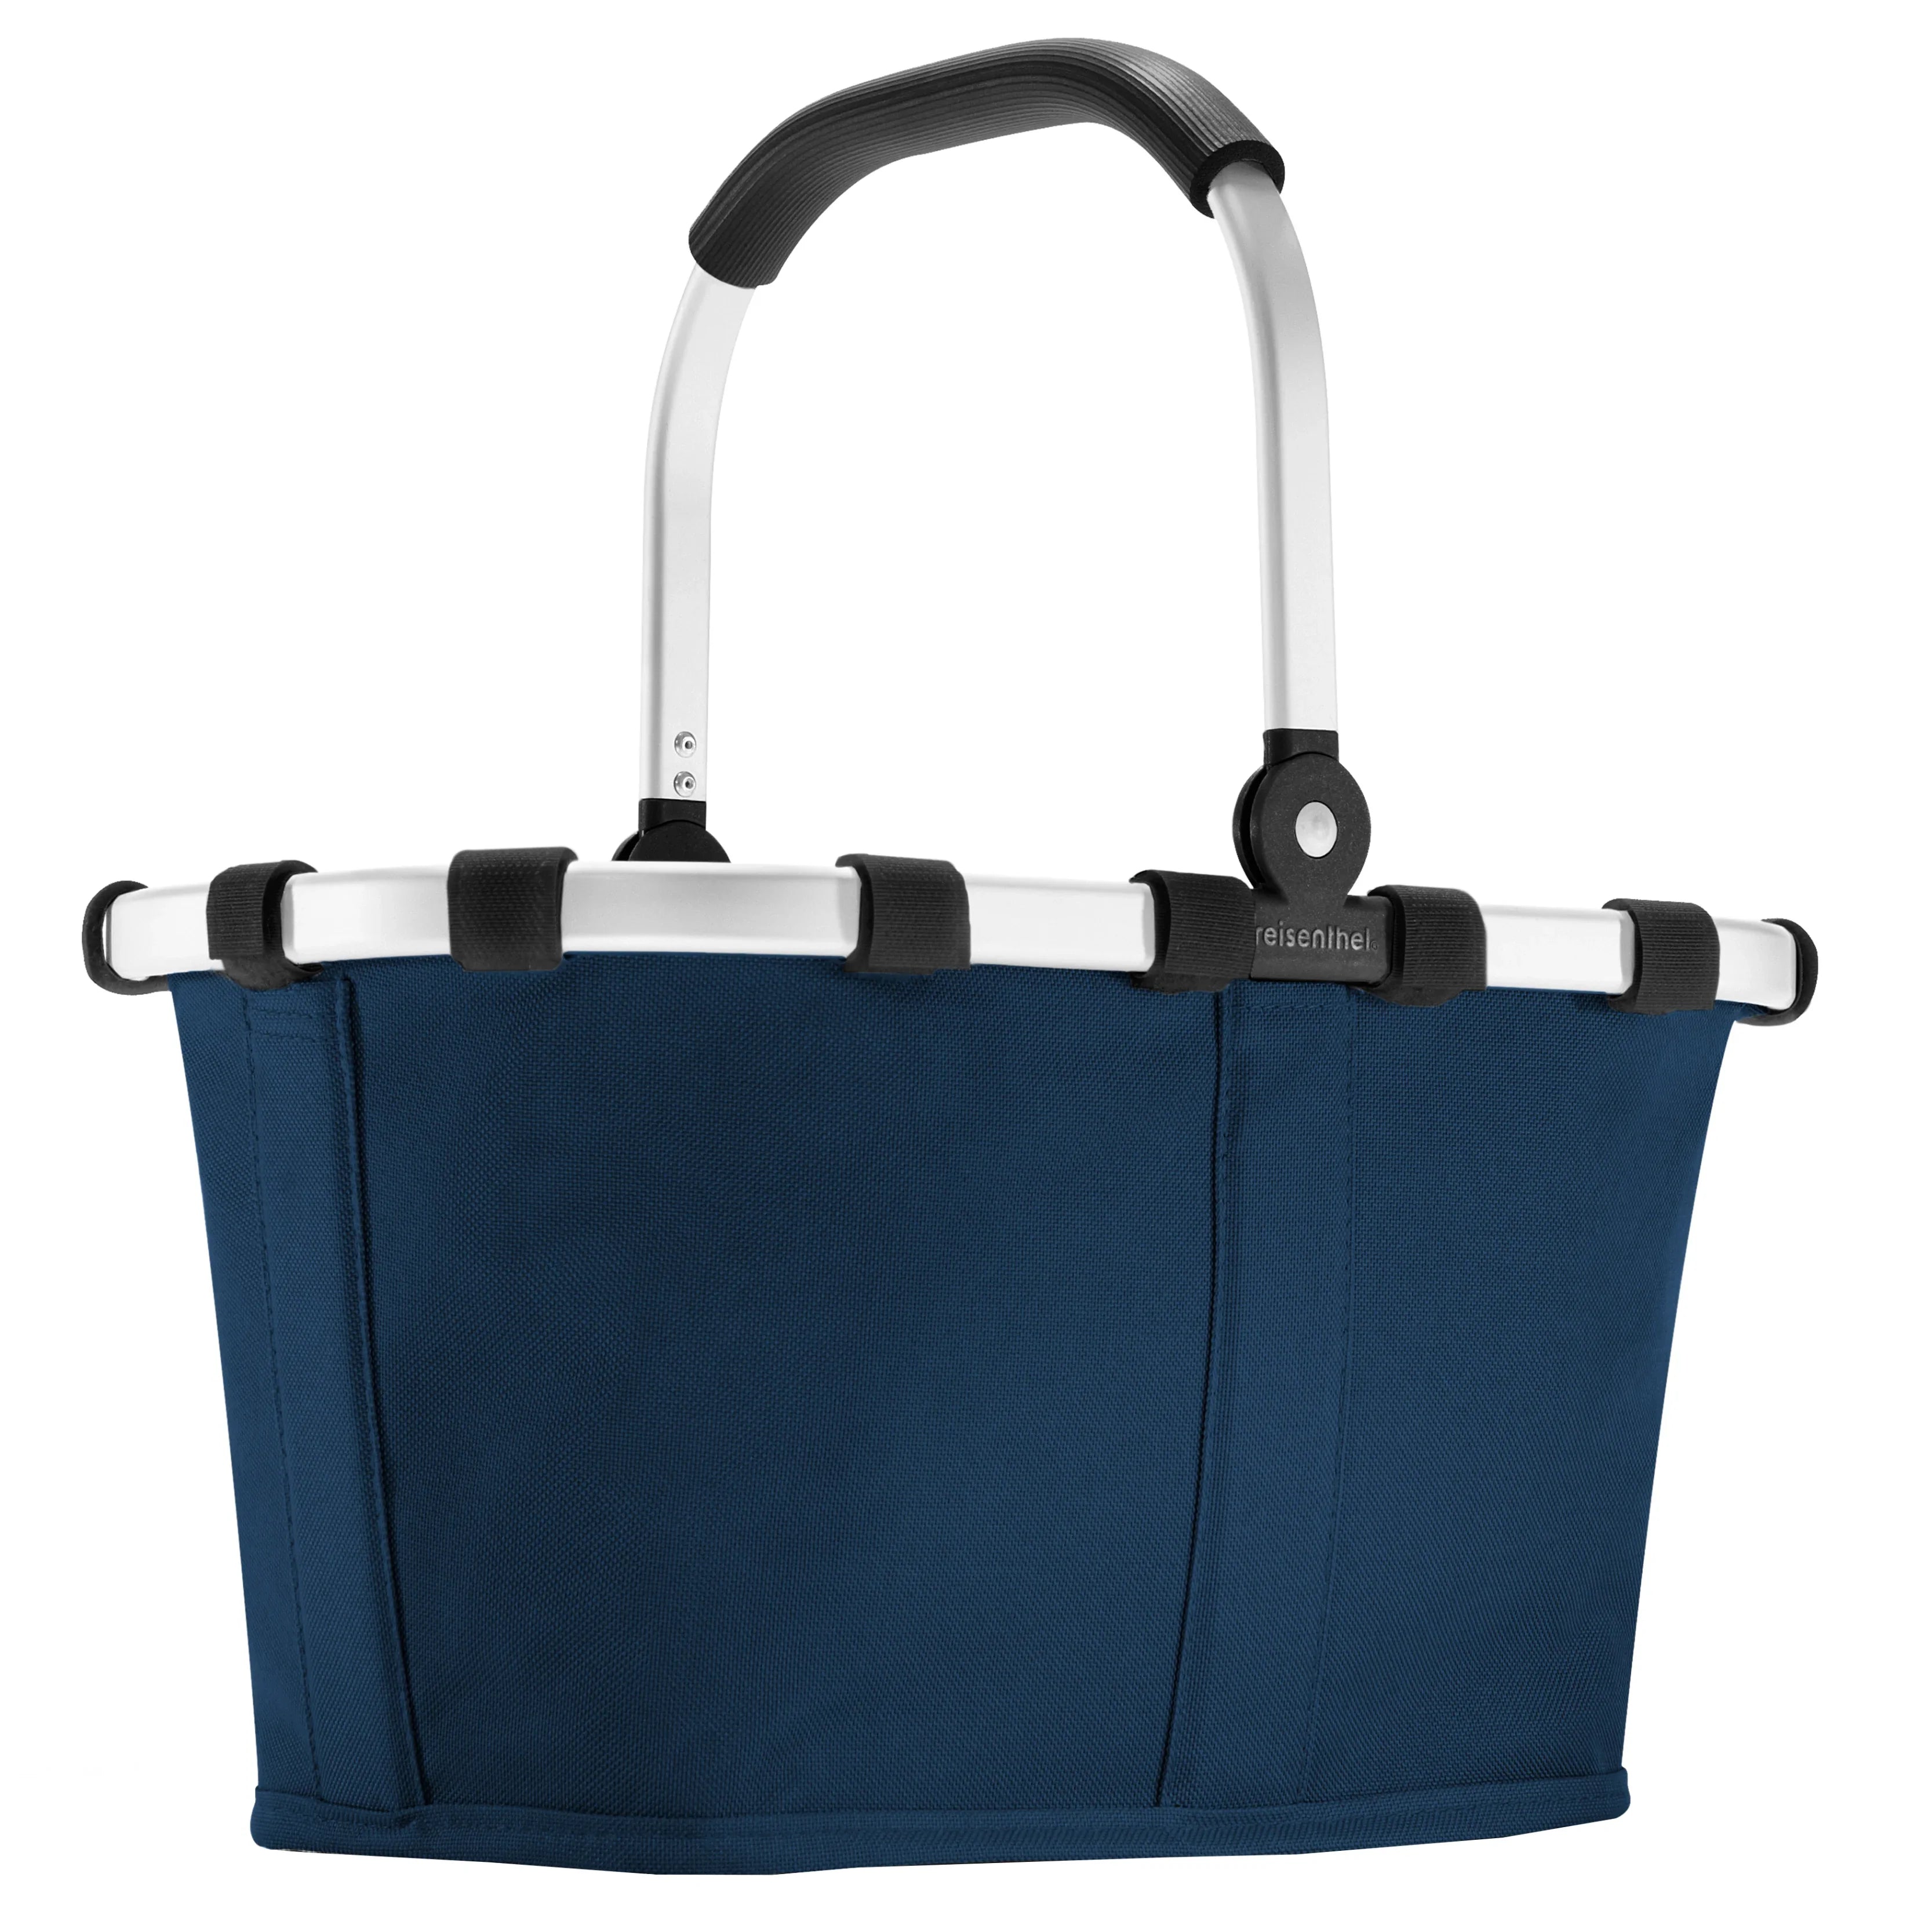 Reisenthel Shopping Carrybag XS children's shopping basket 33 cm - dark blue